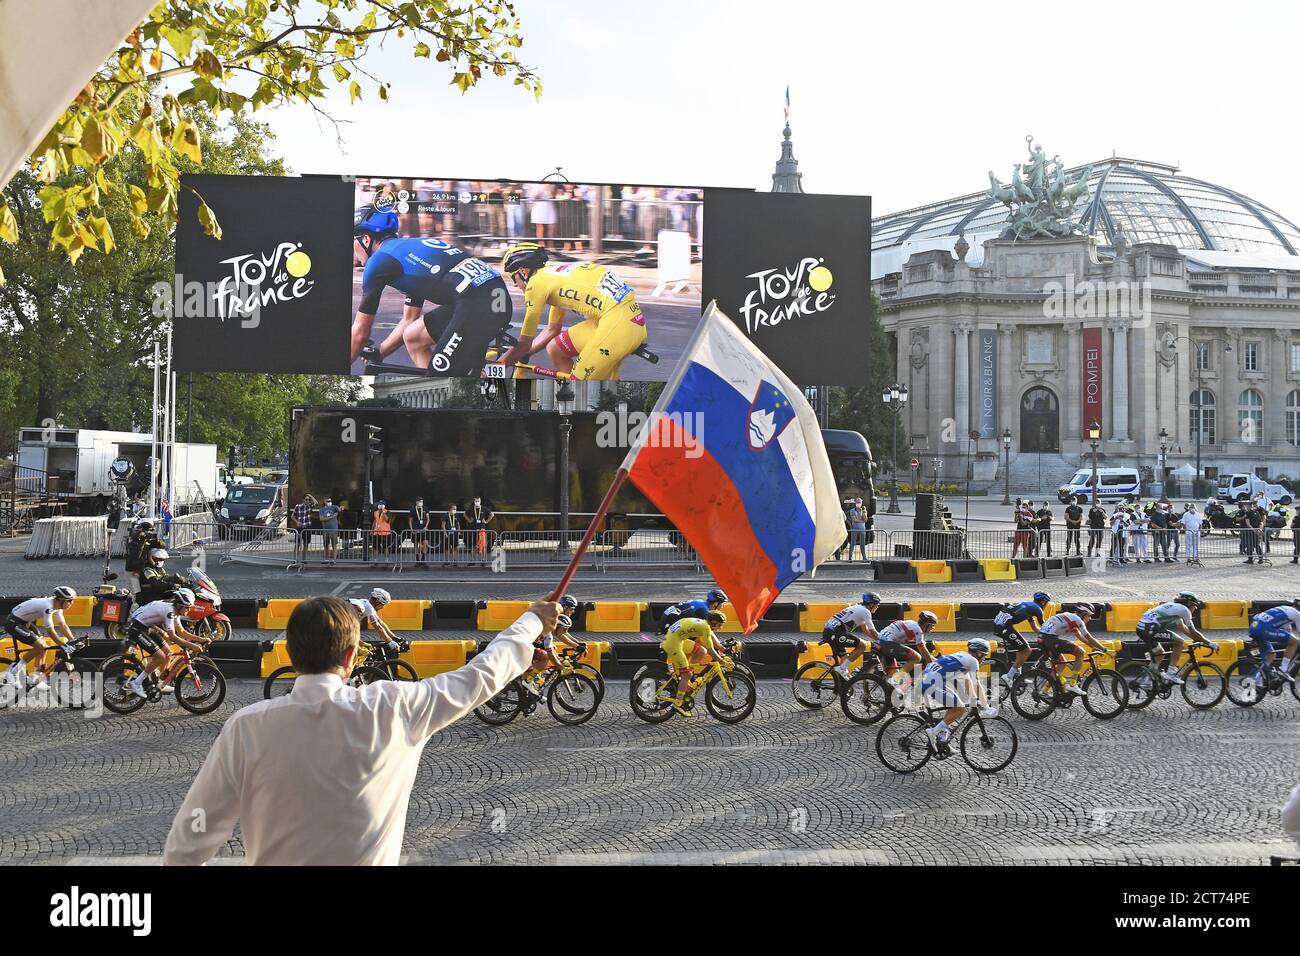 Sloweniens Präsident Borut Pahor (Rückseite) mit Flagge während der Tour de France 2020, Radrennen Etappe 21, Mantes la jolie - Paris Champs-Elys.es (122 Stockfoto